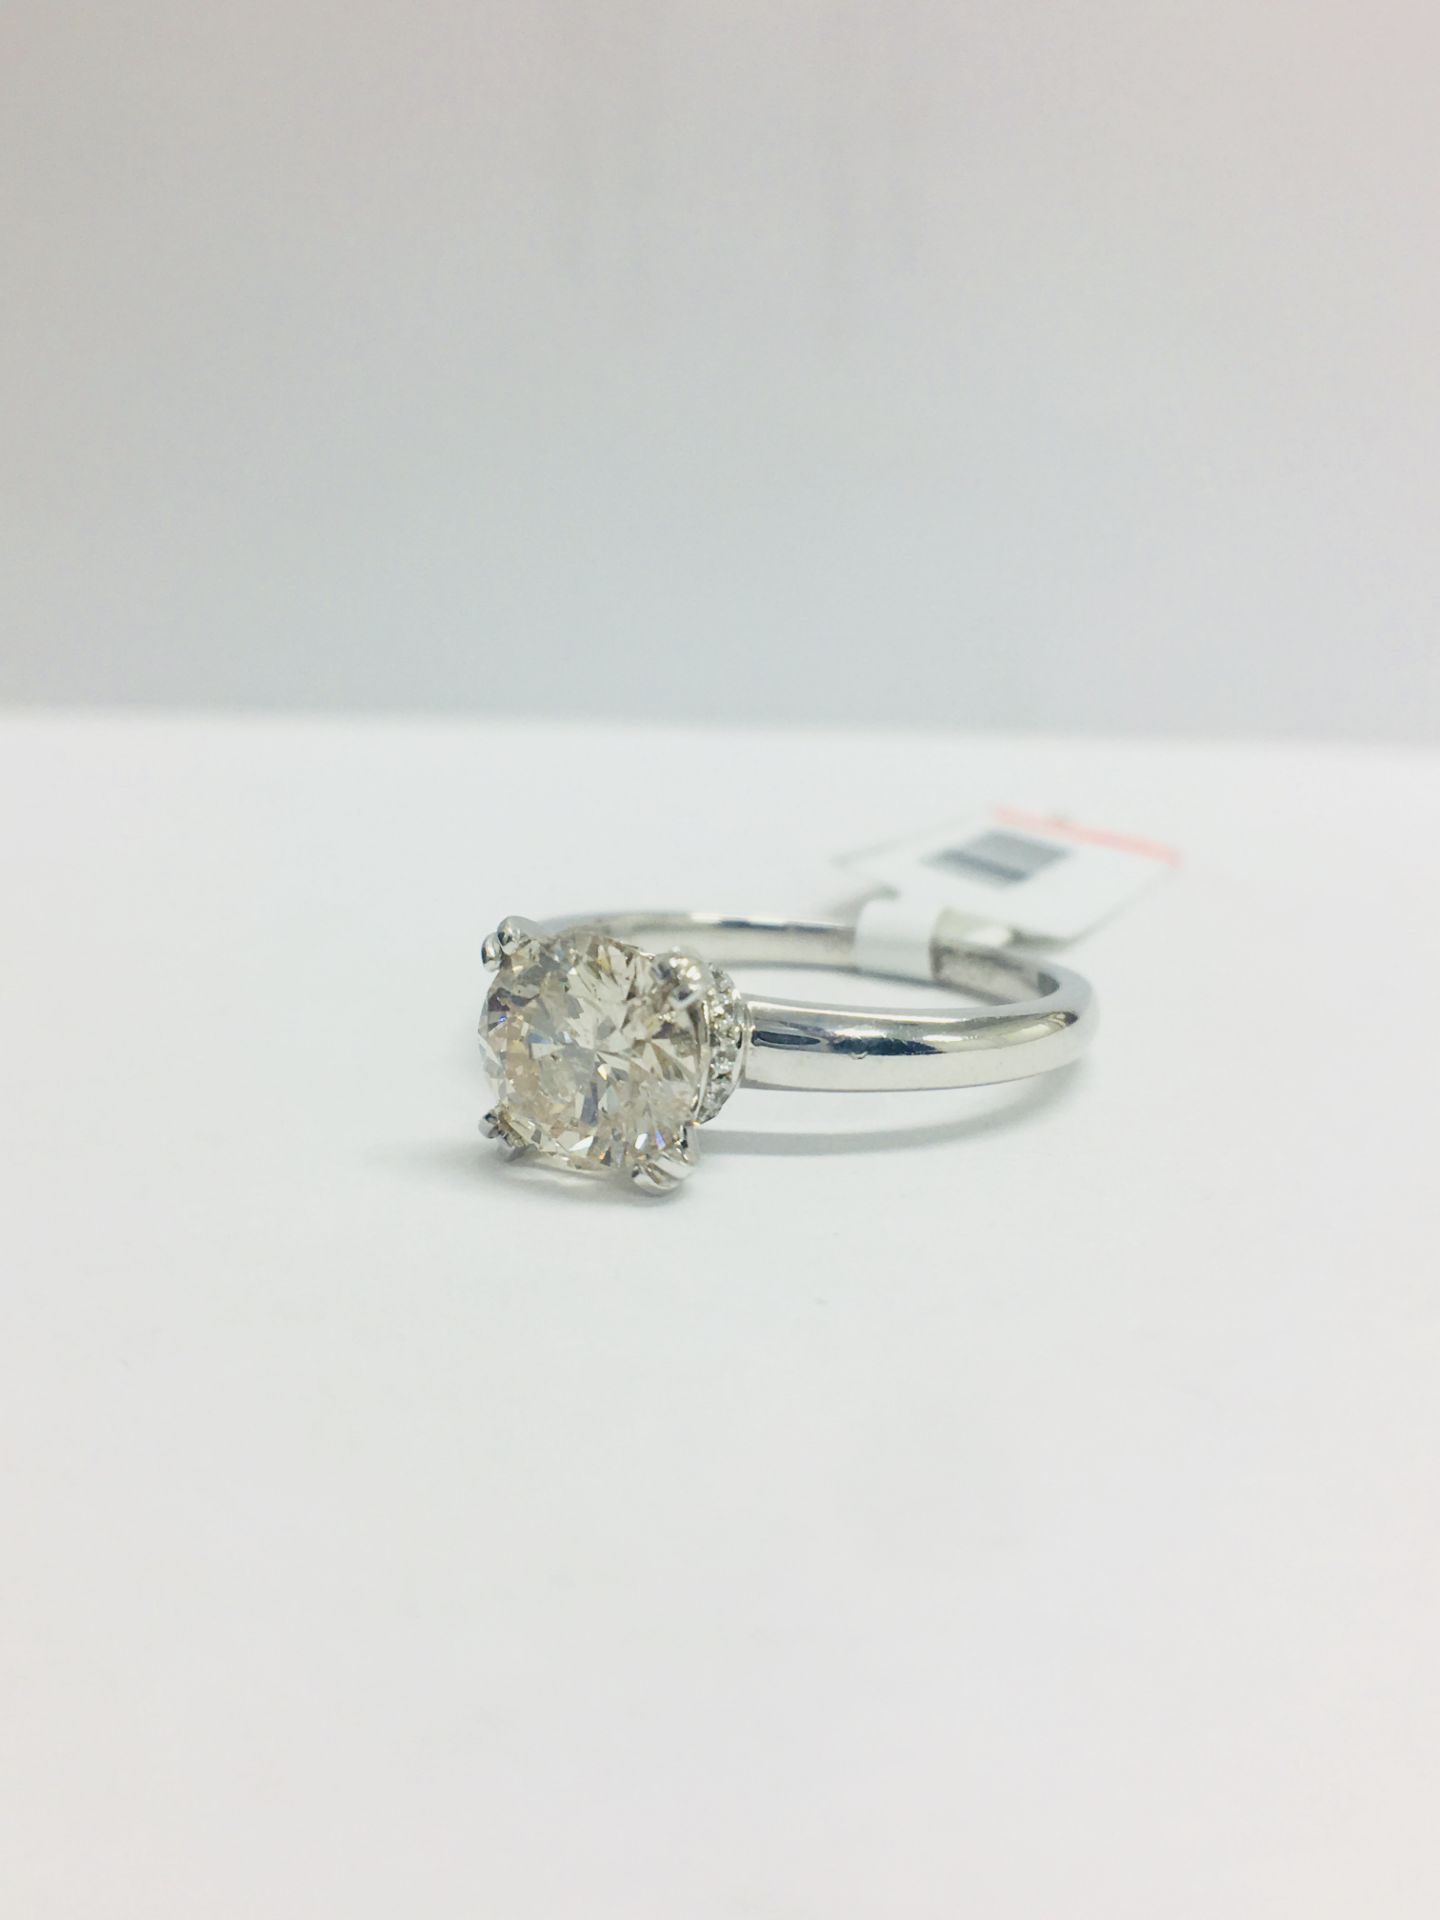 1ct Diamond Solitaire ring set in Platinum diamnd setting - Image 2 of 13